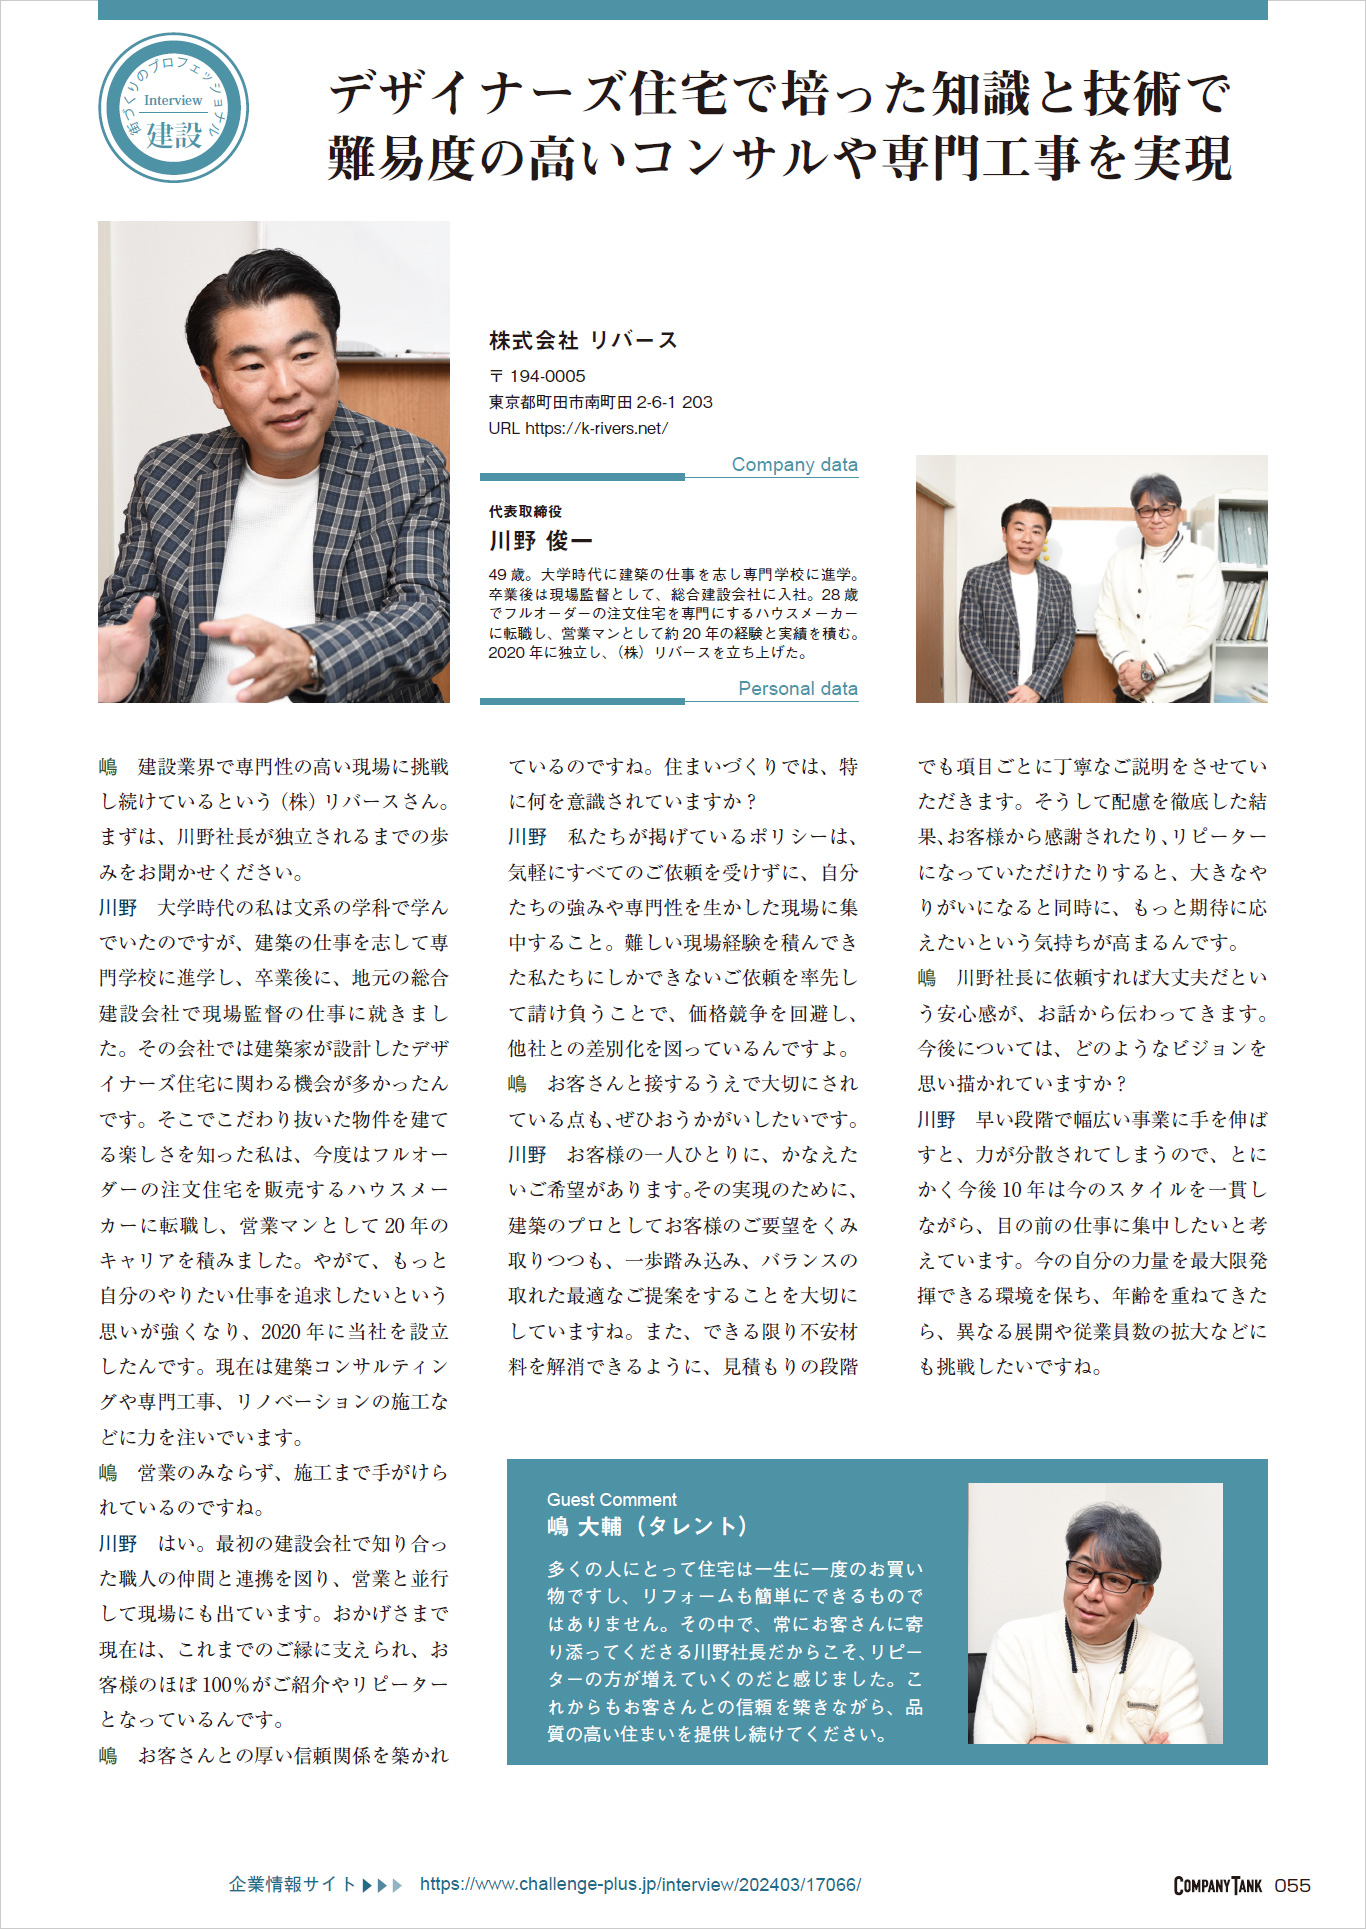 弊社代表が雑誌【COMPANY TANK】の取材を受け、タレントの嶋大輔さんと対談しました